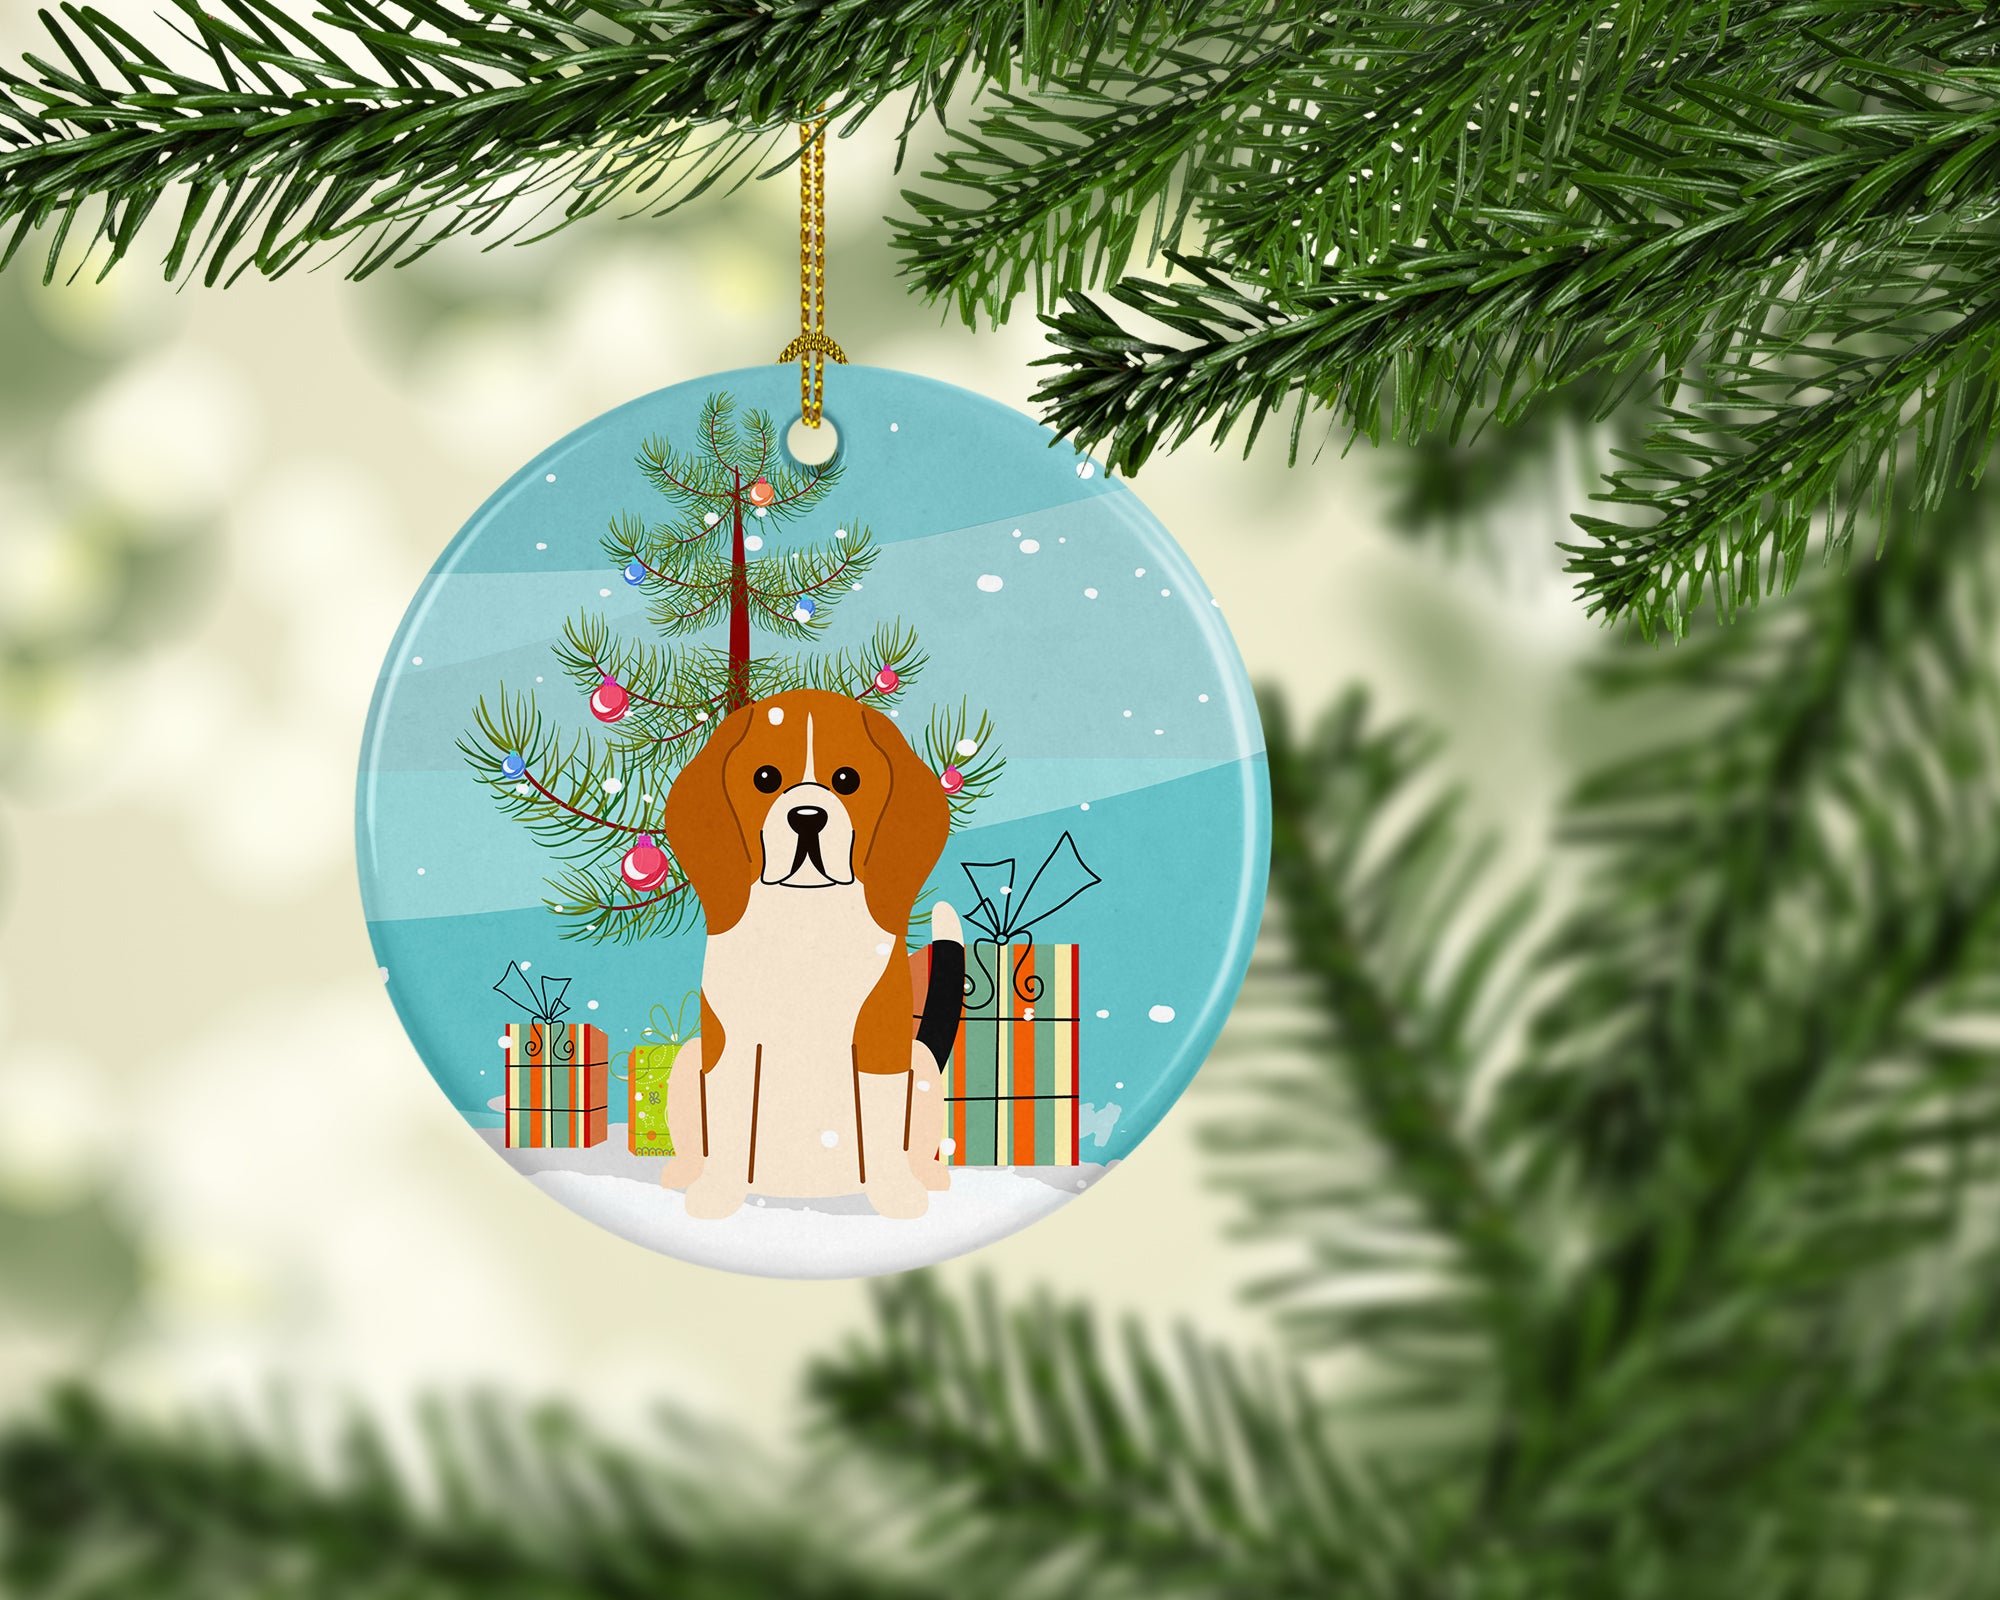 Merry Christmas Tree Beagle Tricolor Ceramic Ornament BB4165CO1 - the-store.com